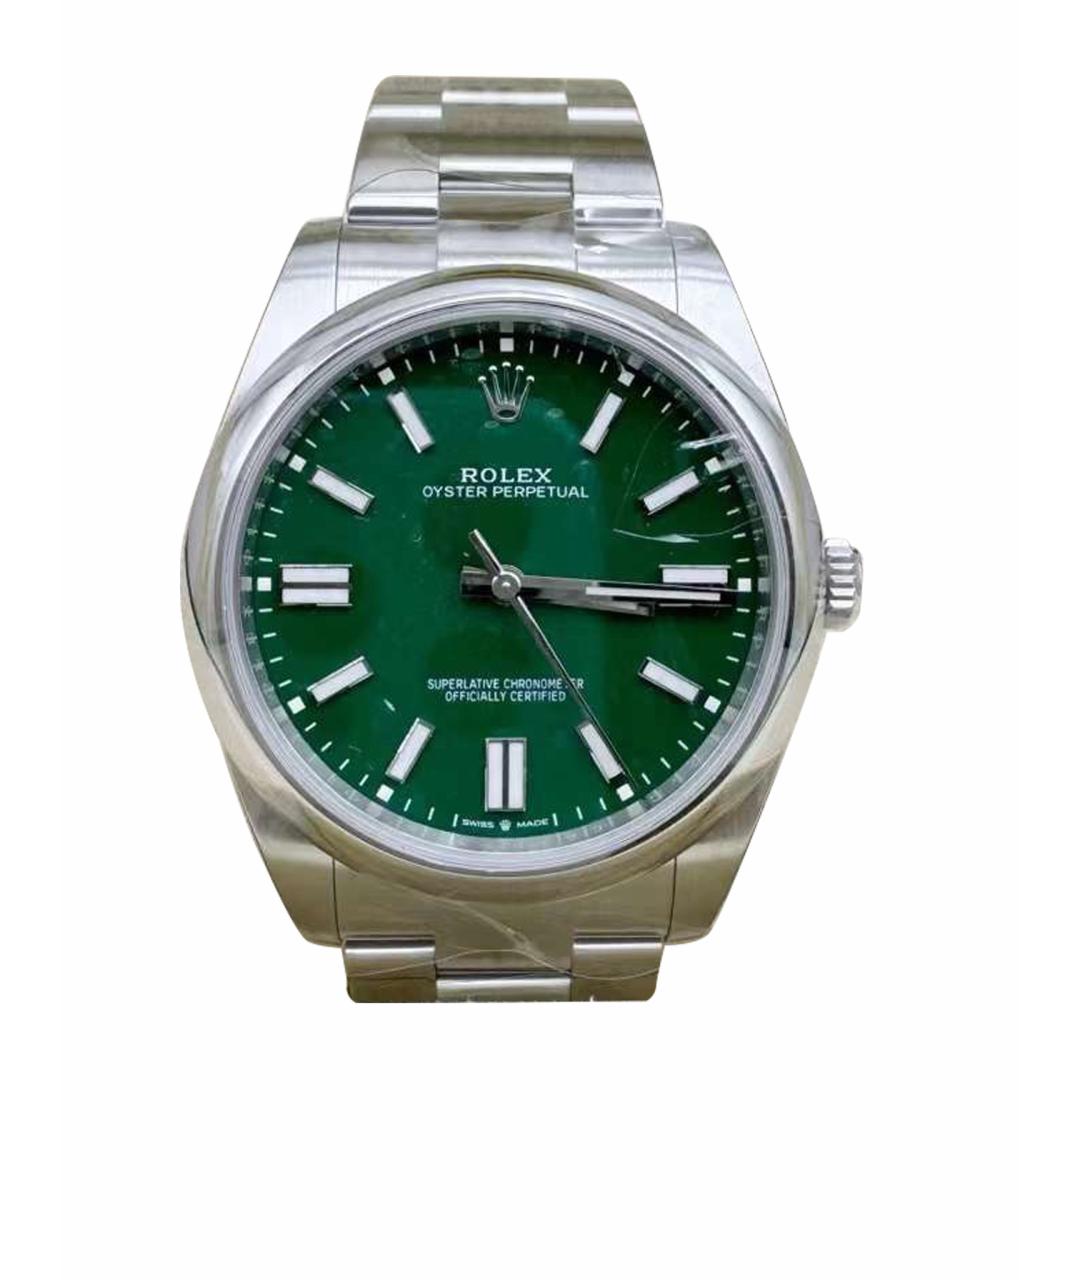 ROLEX Зеленые металлические часы, фото 1